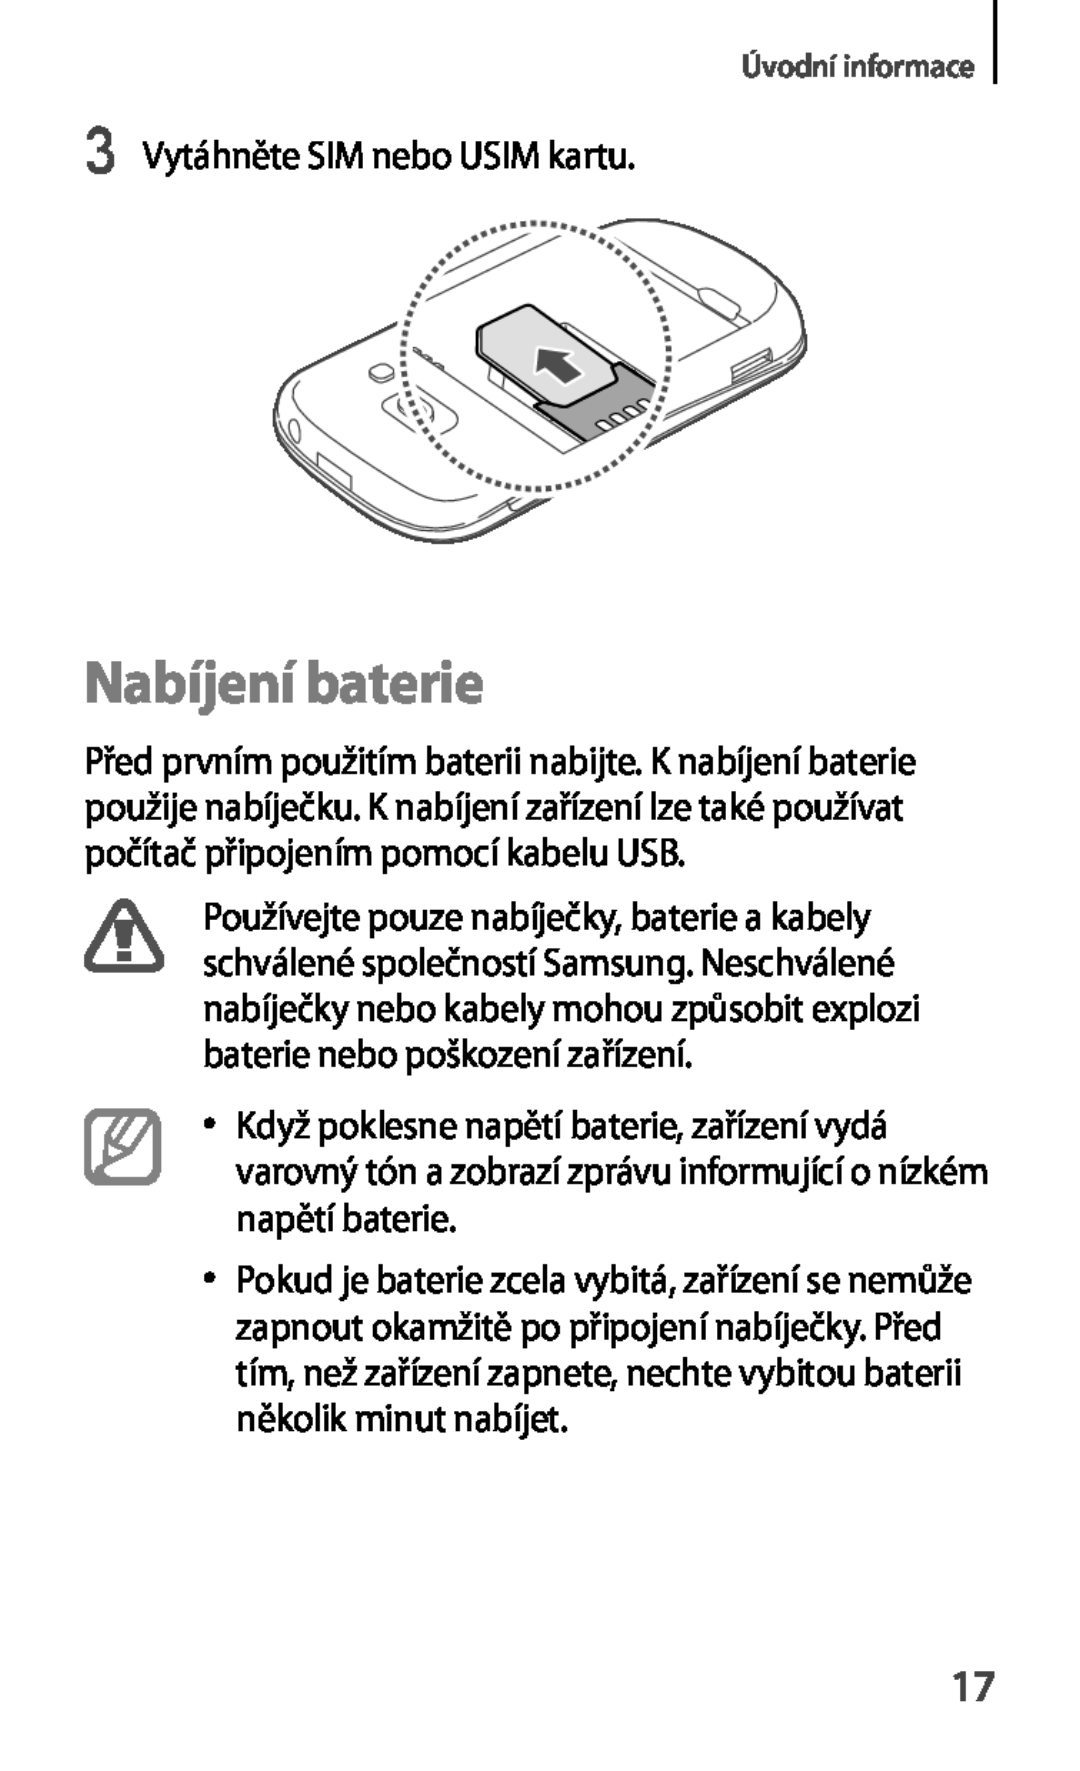 Samsung GT-S6810PWNO2C, GT-S6810MBNEUR, GT-S6810PWNCOS, GT-S6810MBNGBL Nabíjení baterie, 3 Vytáhněte SIM nebo USIM kartu 